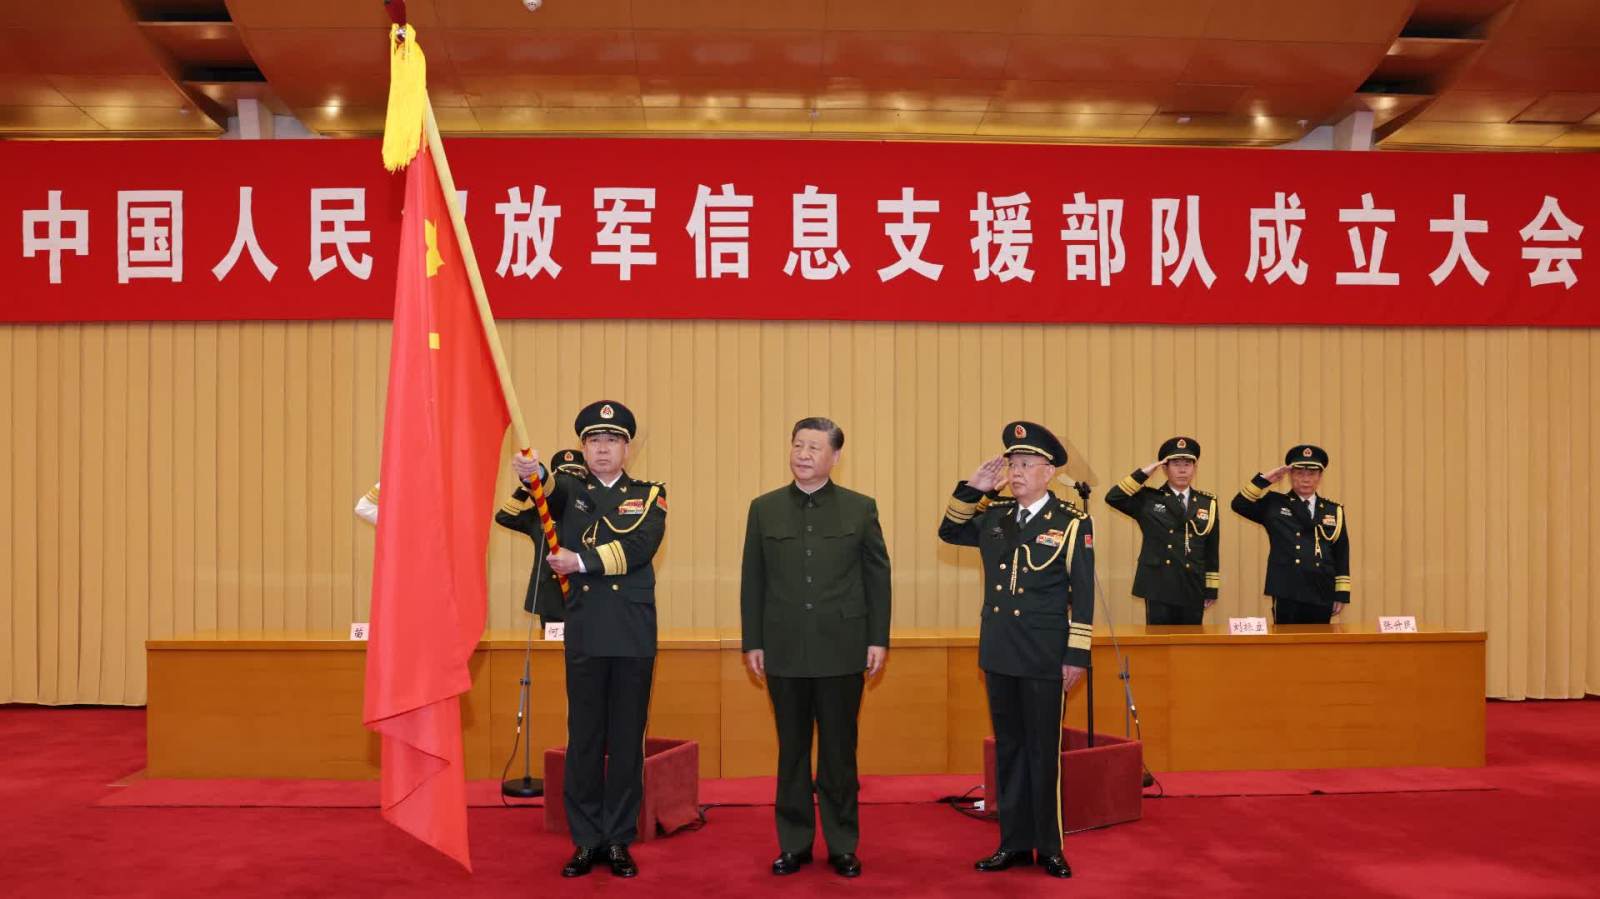 中國人民解放軍信息支援部隊成立大會在京舉行　習近平向信息支援部隊授予軍旗並致訓詞